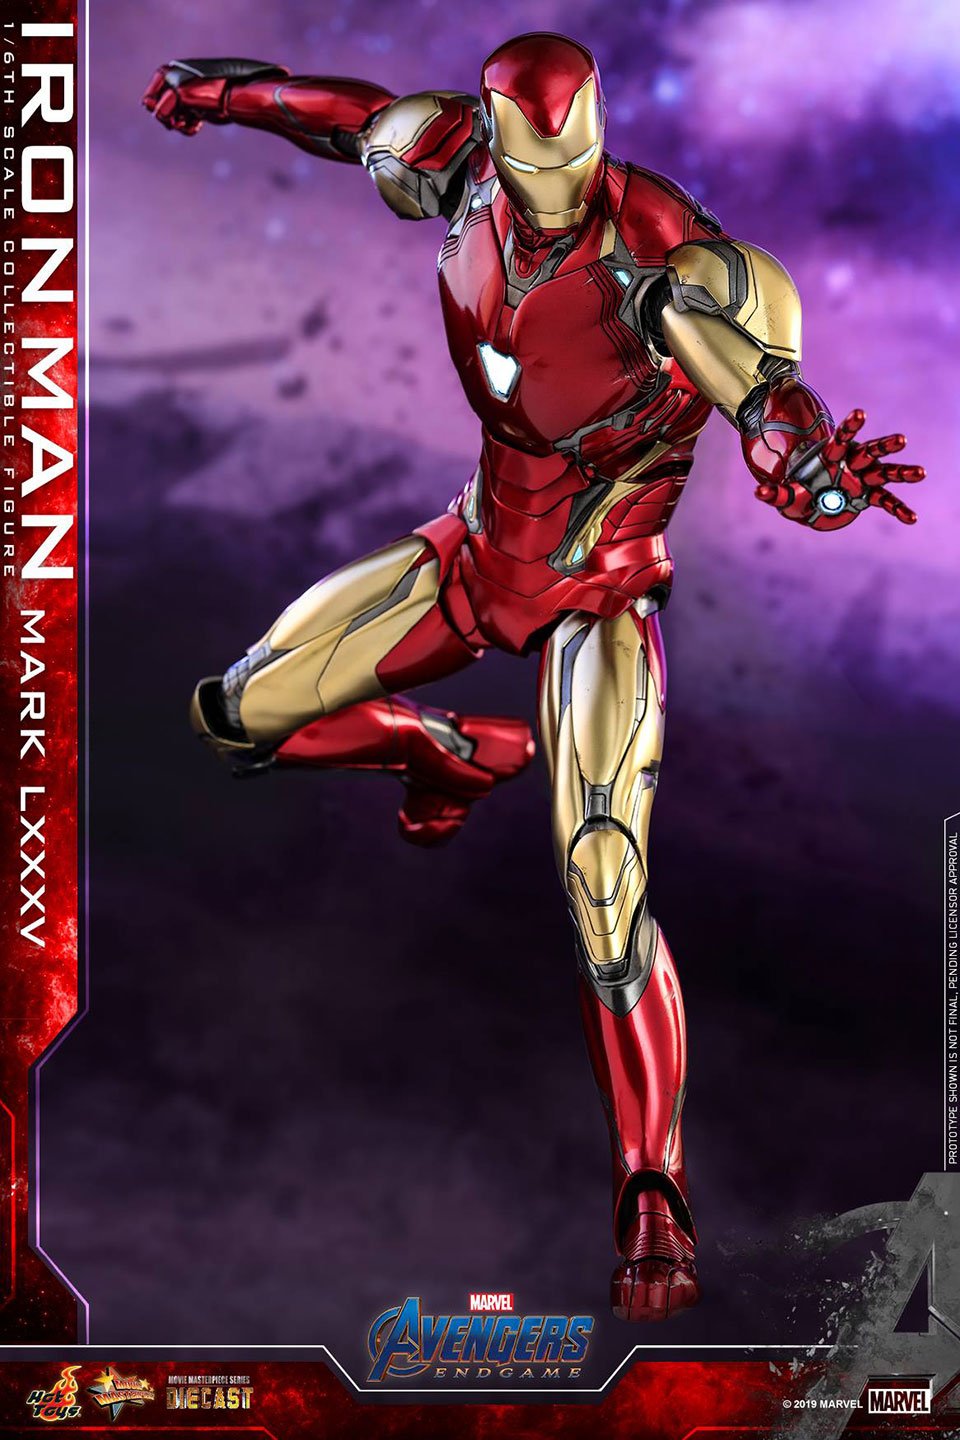 Hot Toys Iron Man Endgame Figure